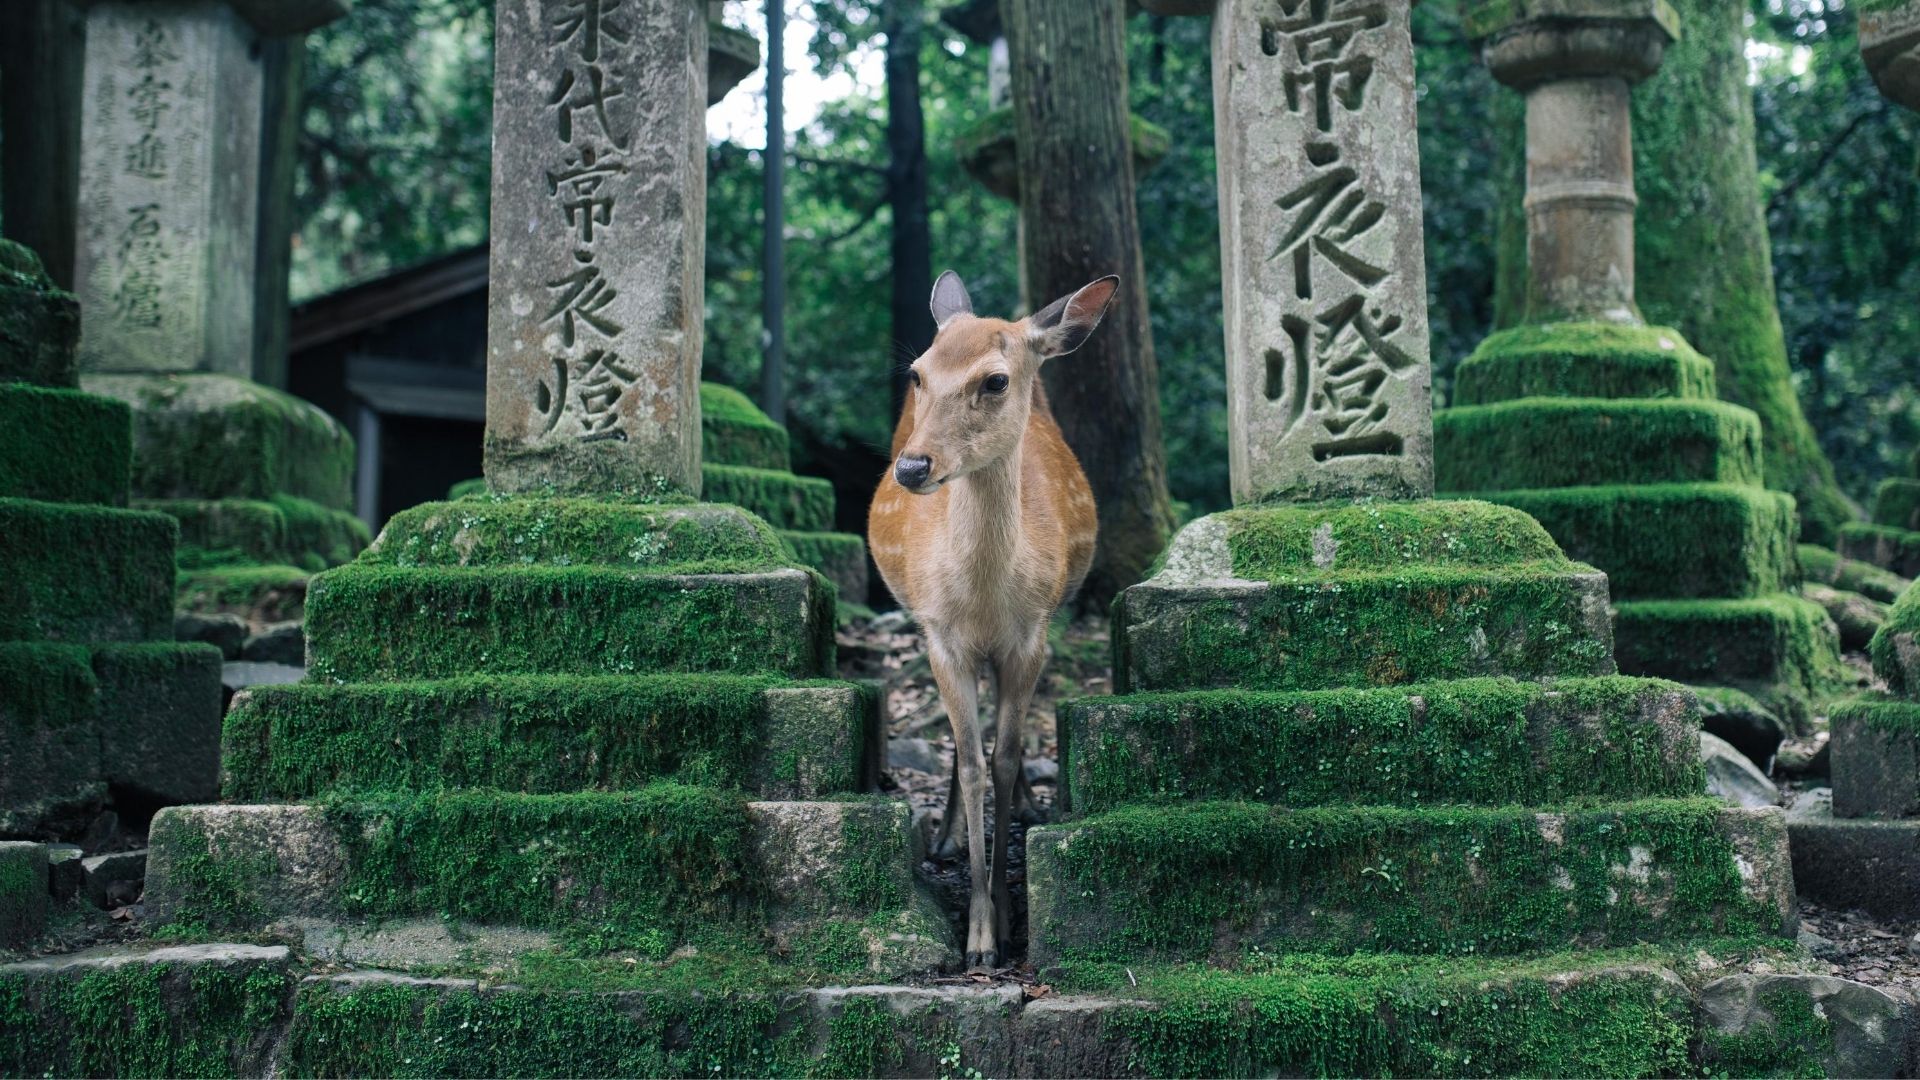 Deer between temple posts in Nara, Japan